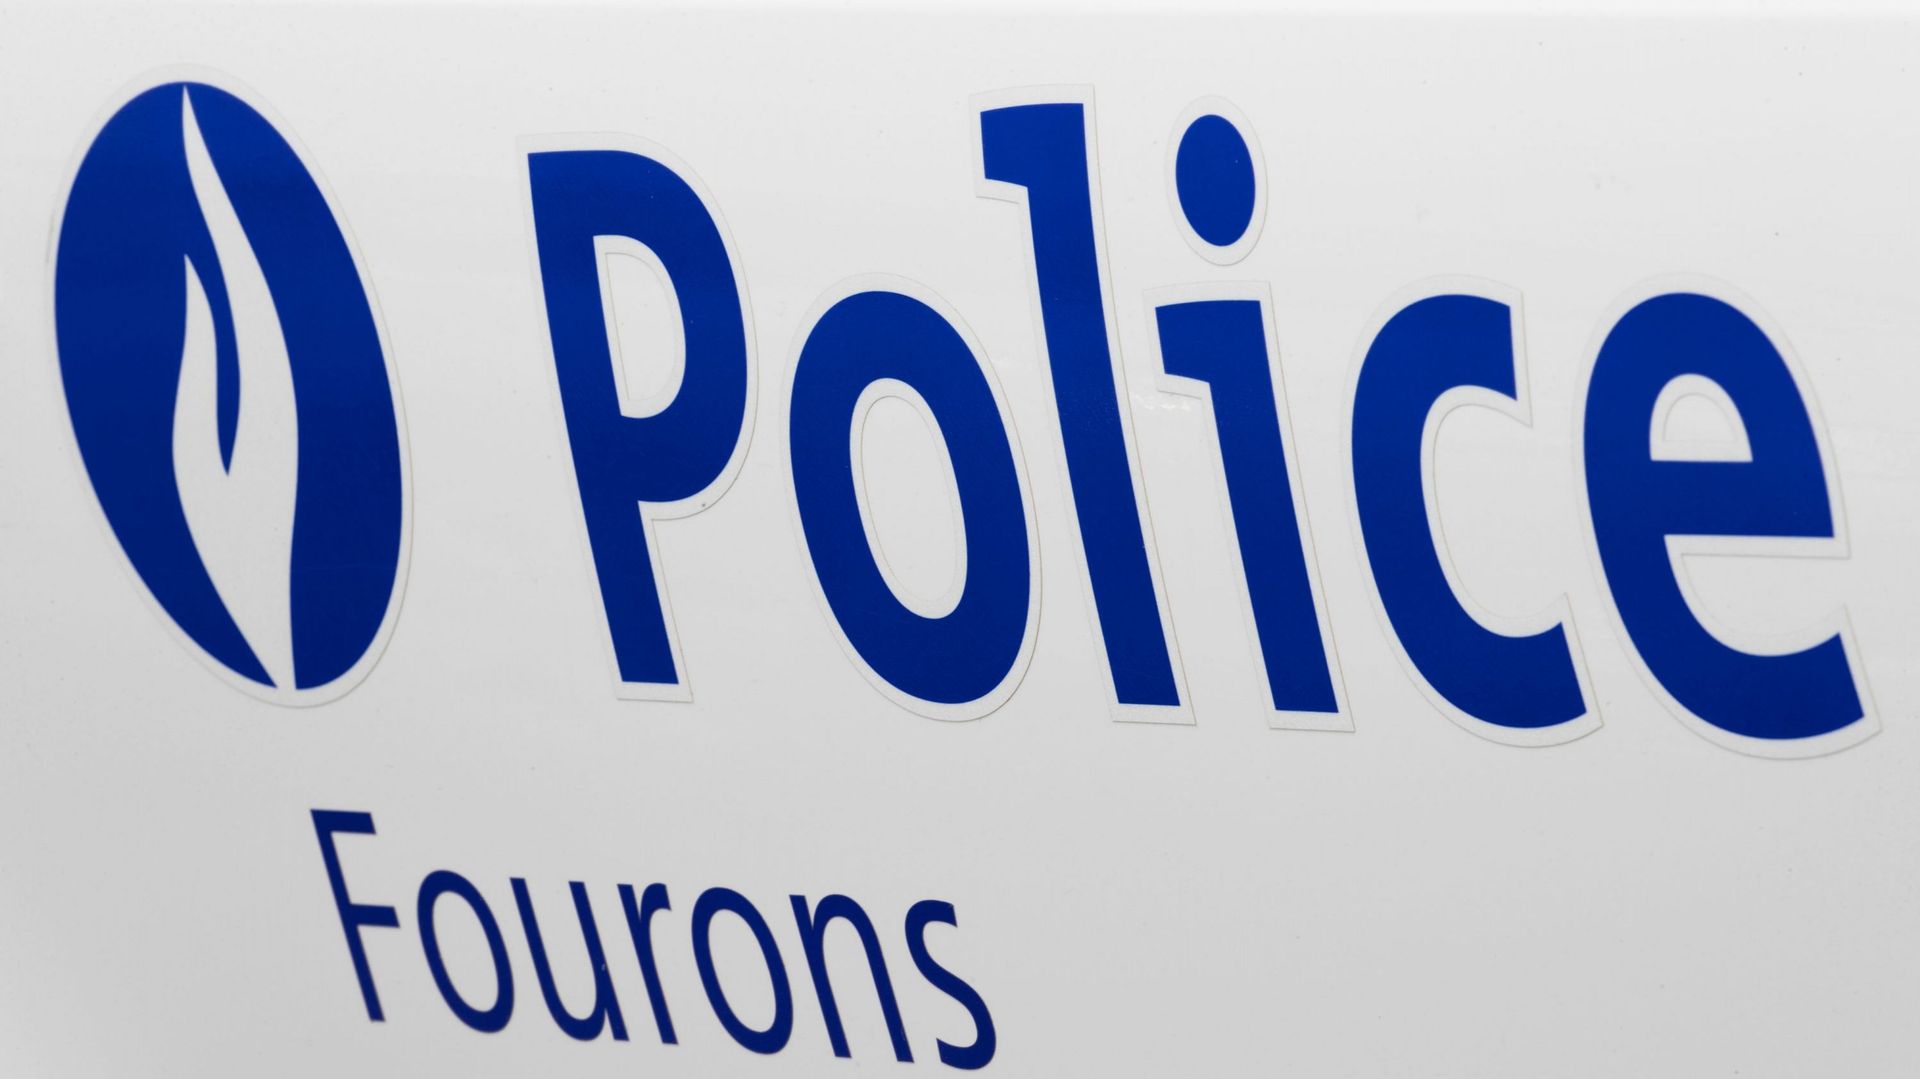 Un conducteur a tenter d'échapper à un contrôle de police dans la commune de Fourons